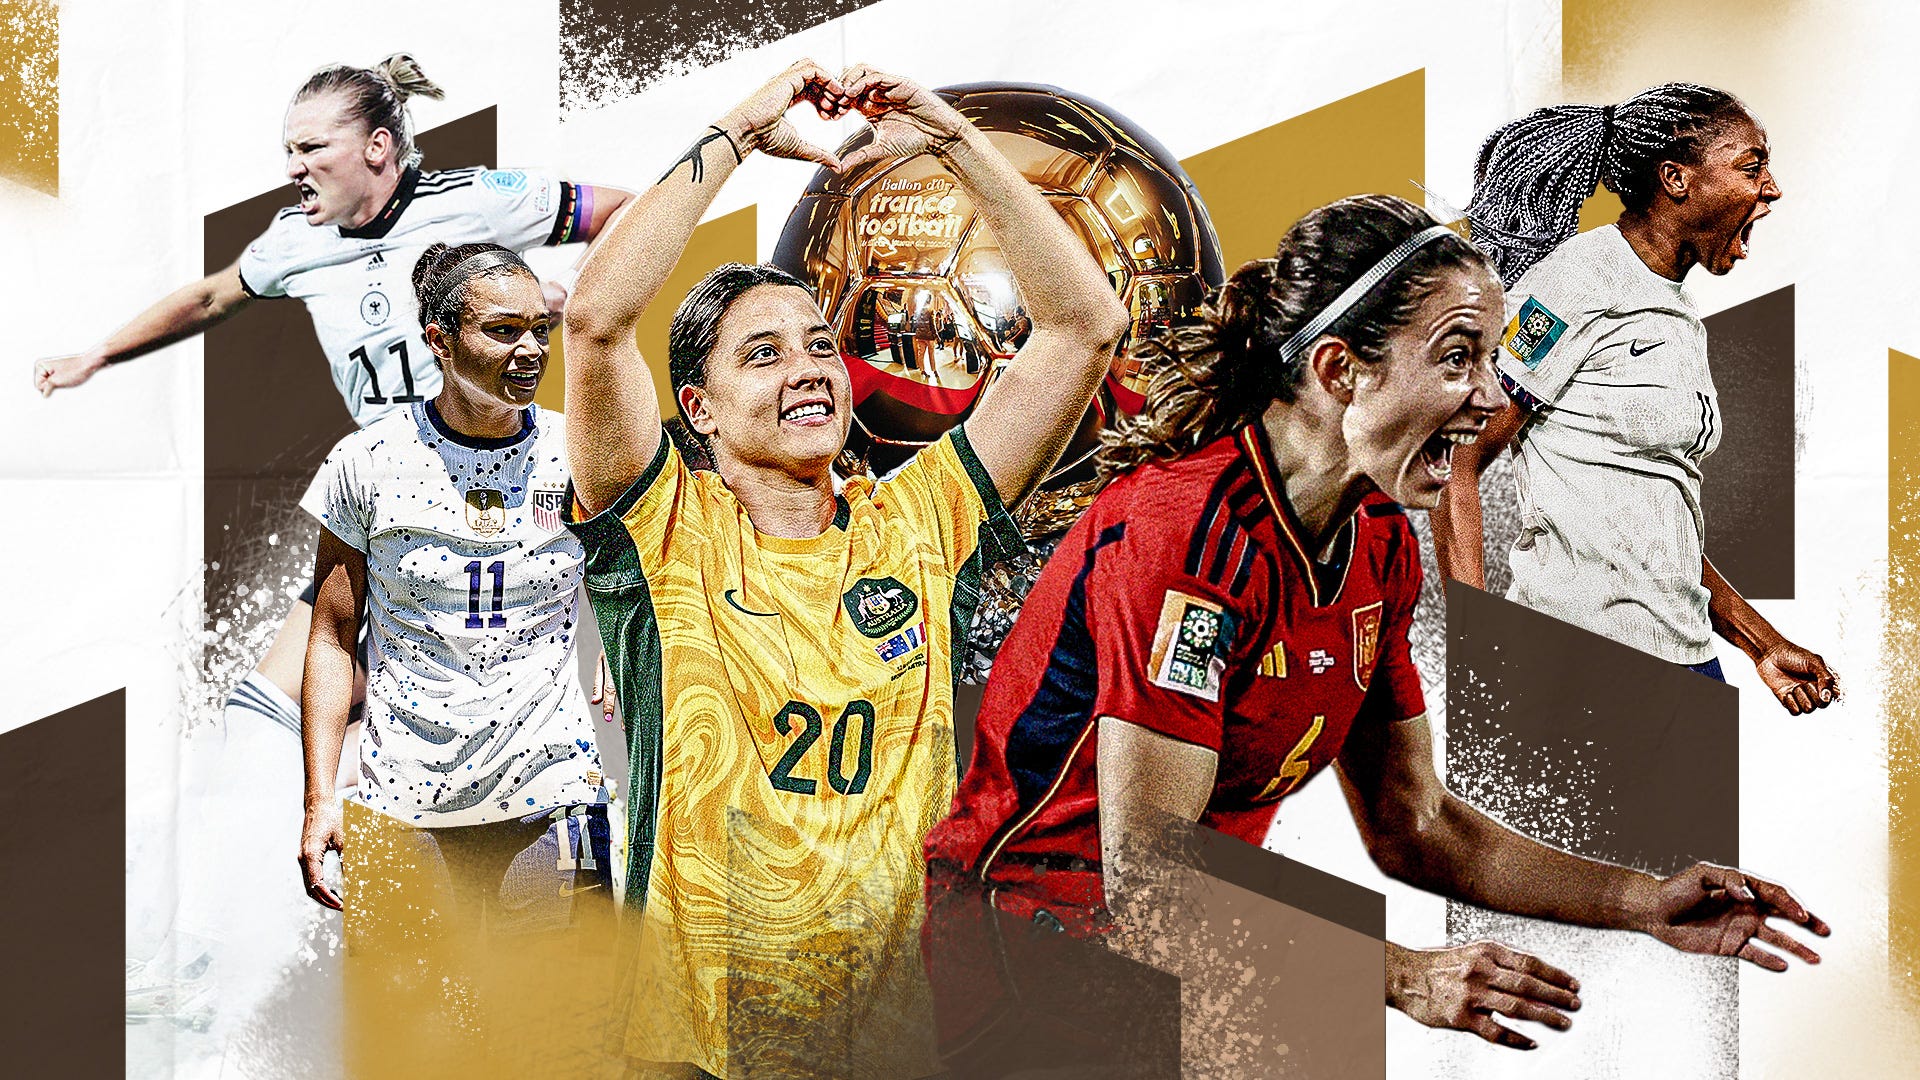 2023 Women's Ballon d'Or: All nominees revealed as award is set for new  winner – Her Football Hub